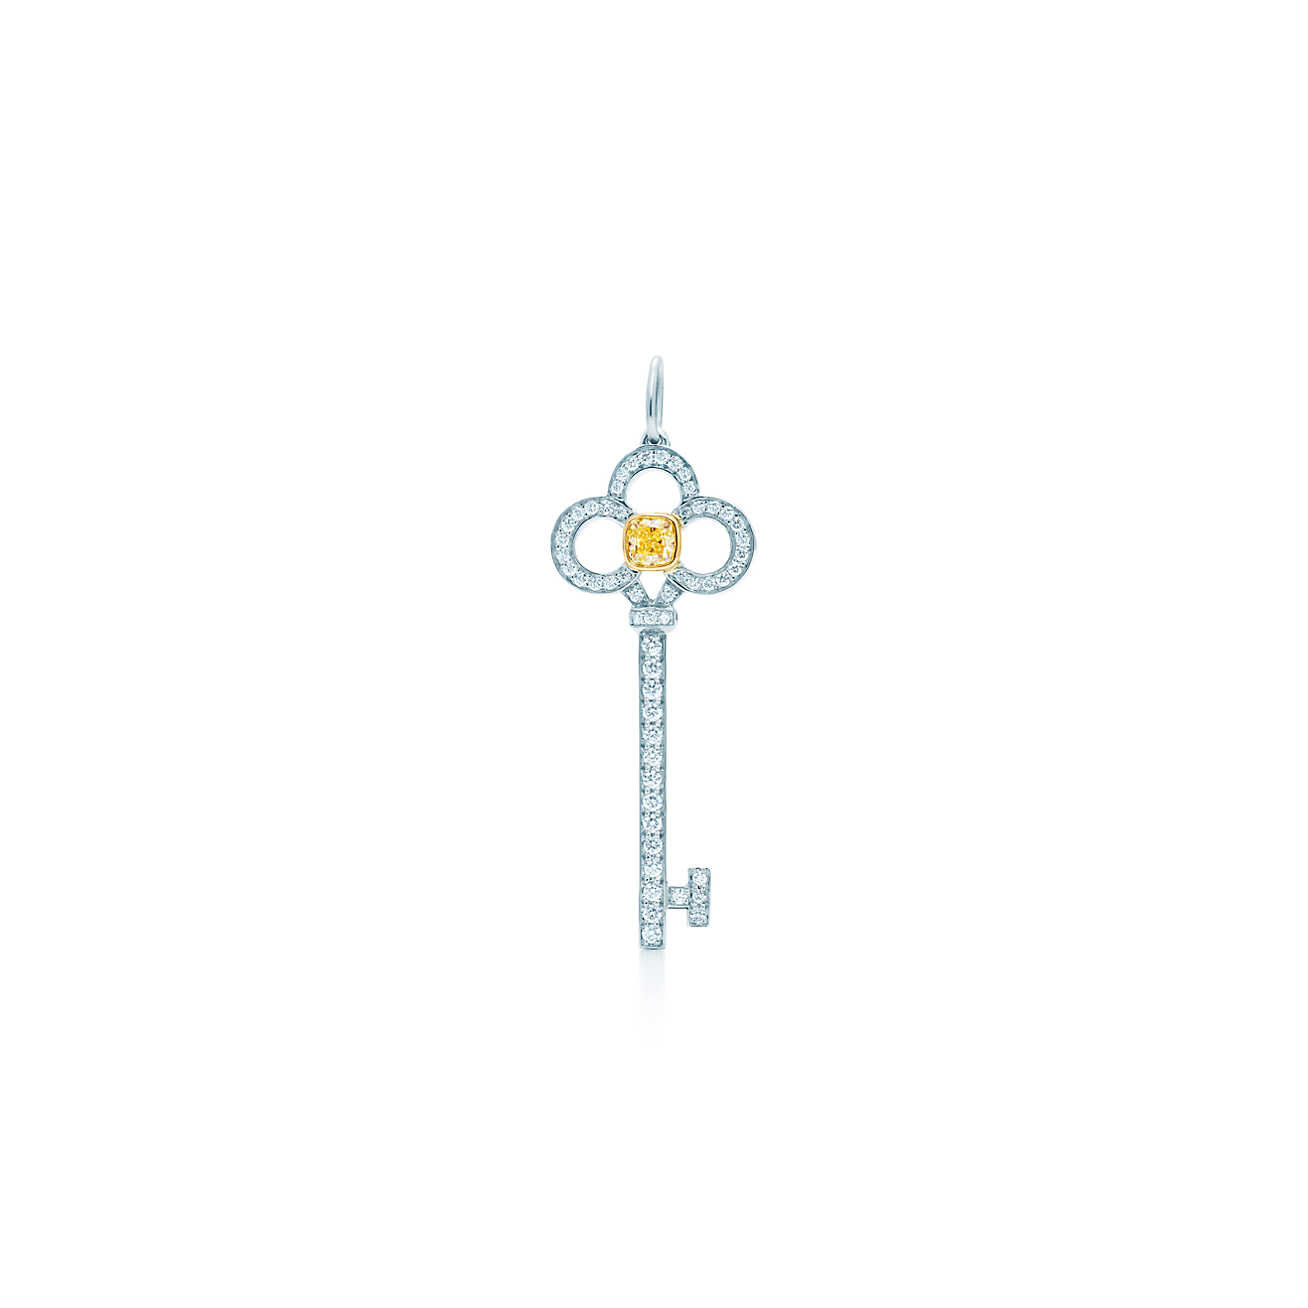 Tiffany Keys：皇冠钥匙